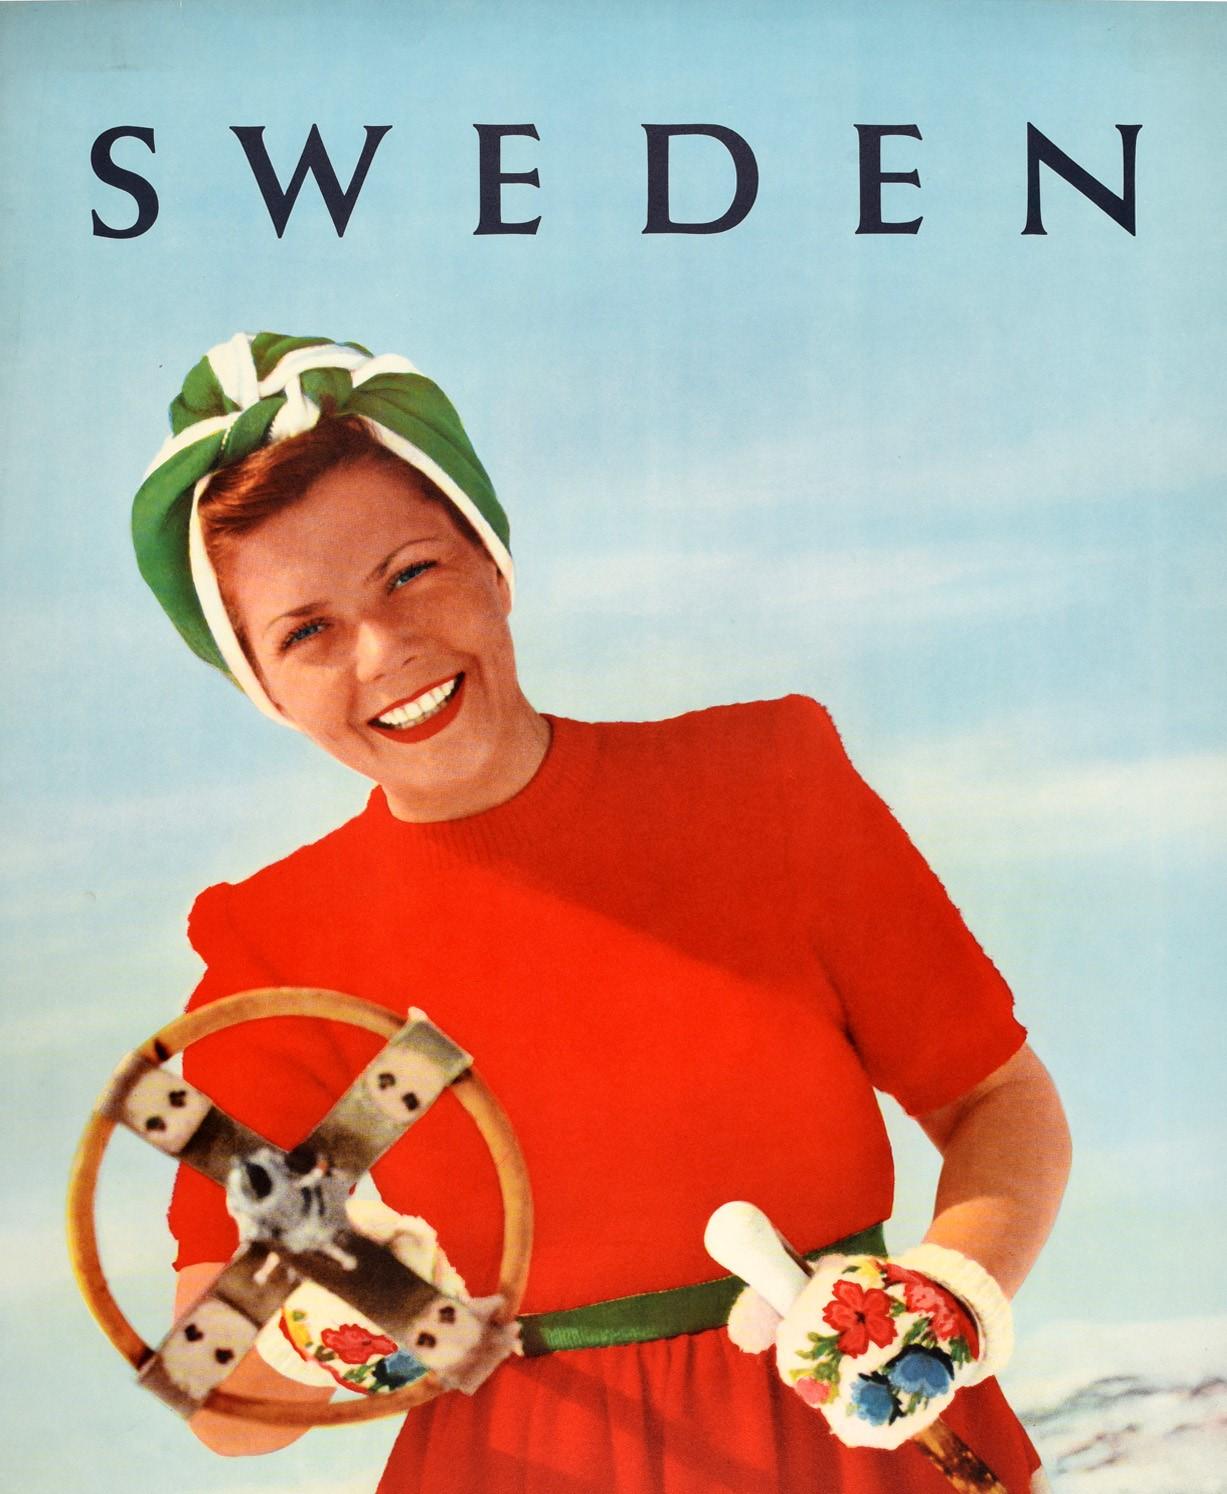 Affiche originale de voyage de ski vintage pour la Suède présentant l'image amusante d'une dame souriante portant une robe rouge, blanche et verte, un foulard et des gants à motifs floraux, debout sur une montagne enneigée et pointant un bâton de